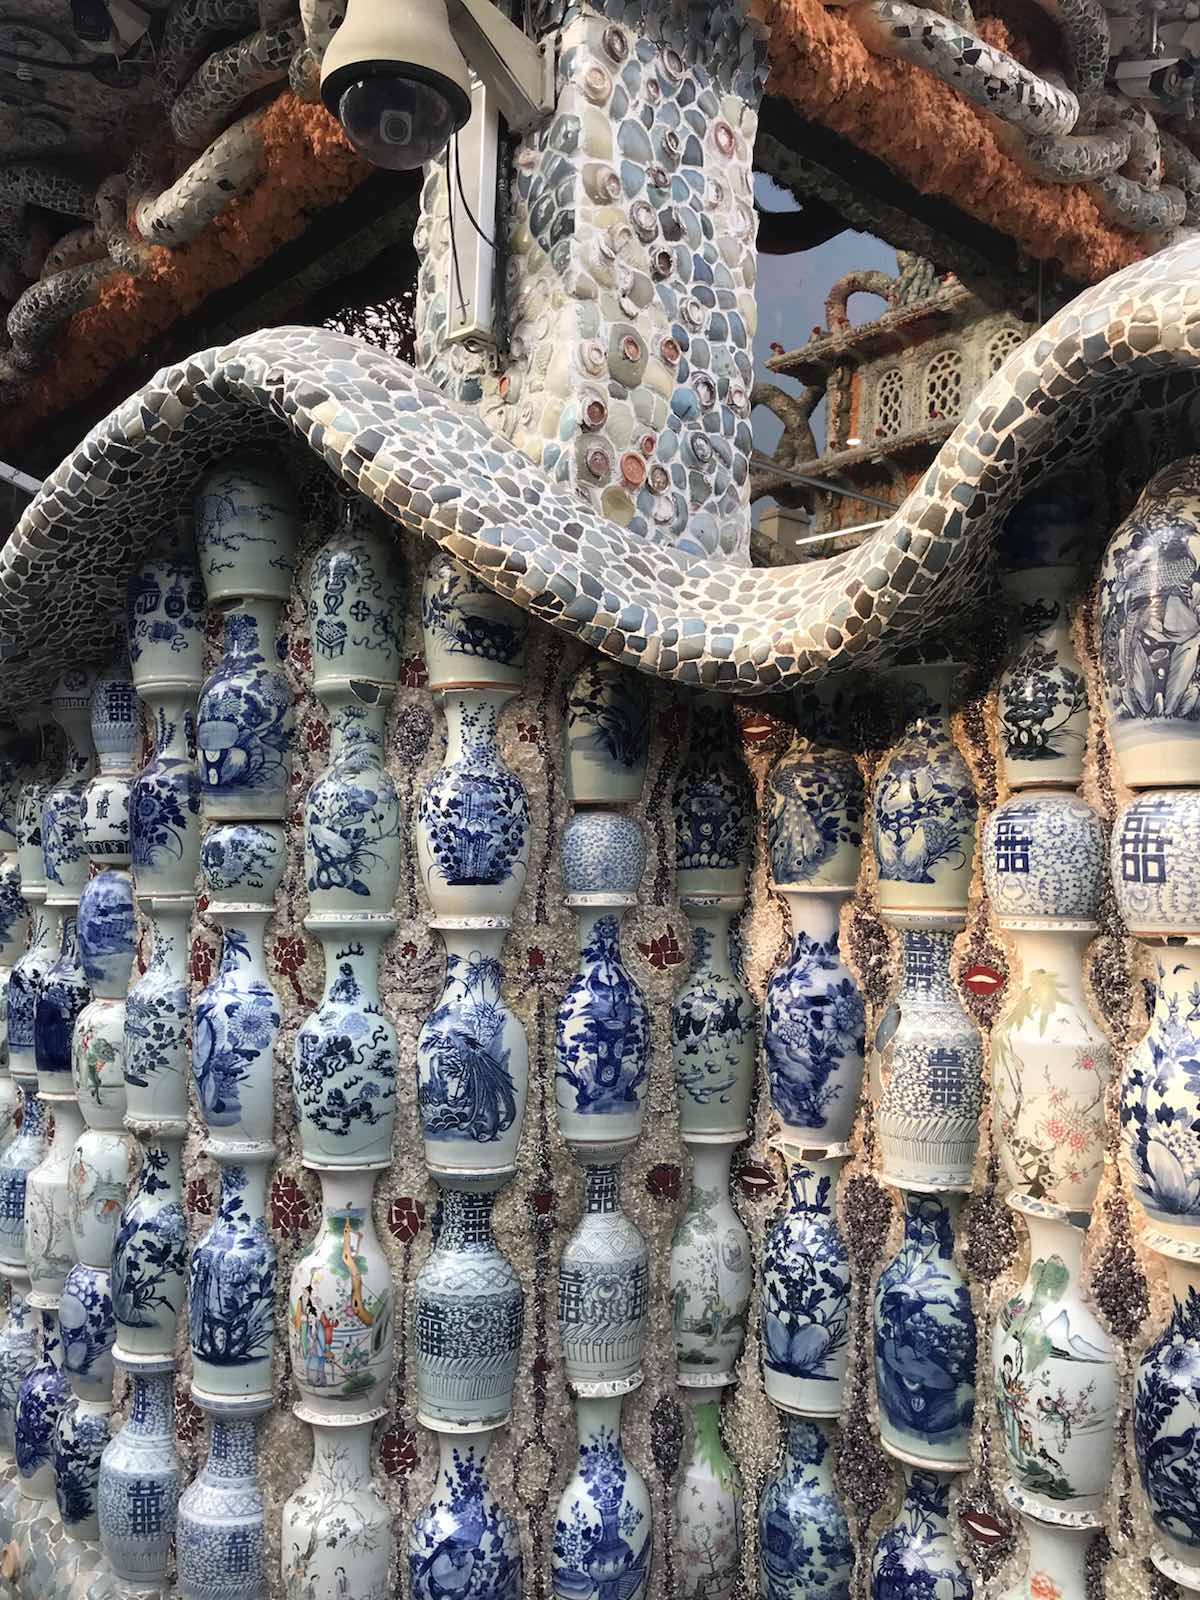 瓷房子属于天津很独特的建筑了，就在滨江道后身。是一座用多件古董装修而成